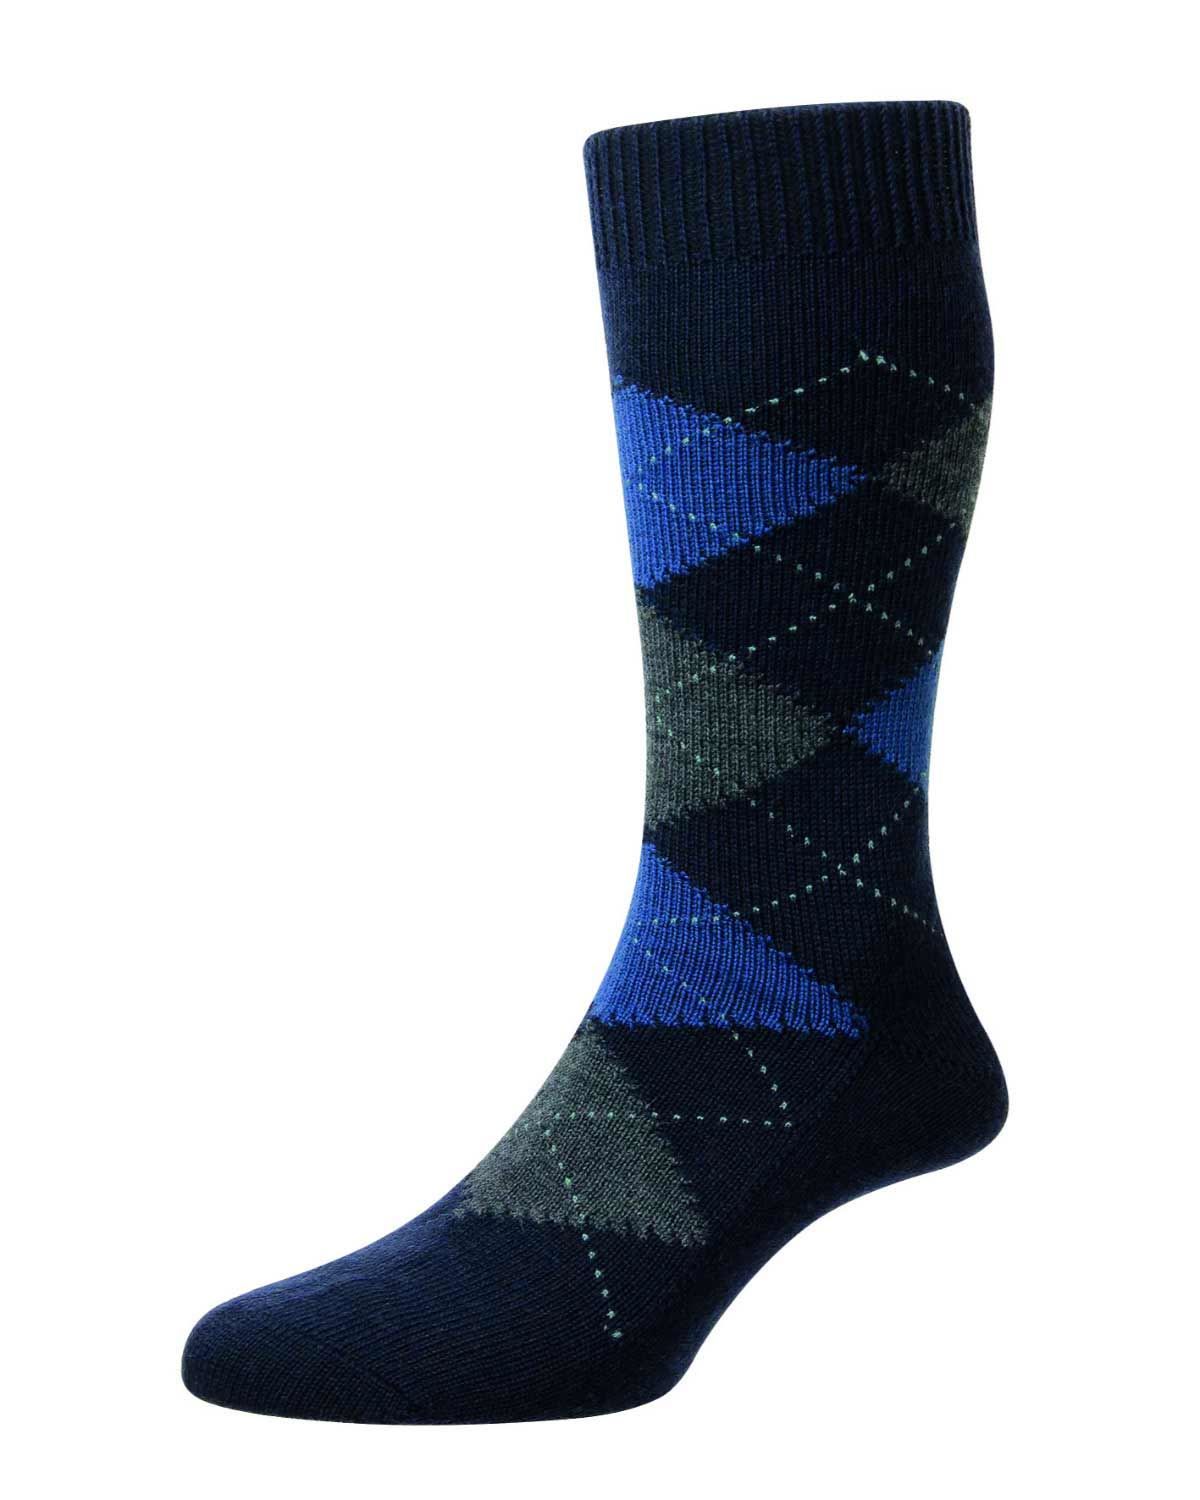 Wool blend Argyll Socks. Made from 70% Merino Wool, 30% Nylon.